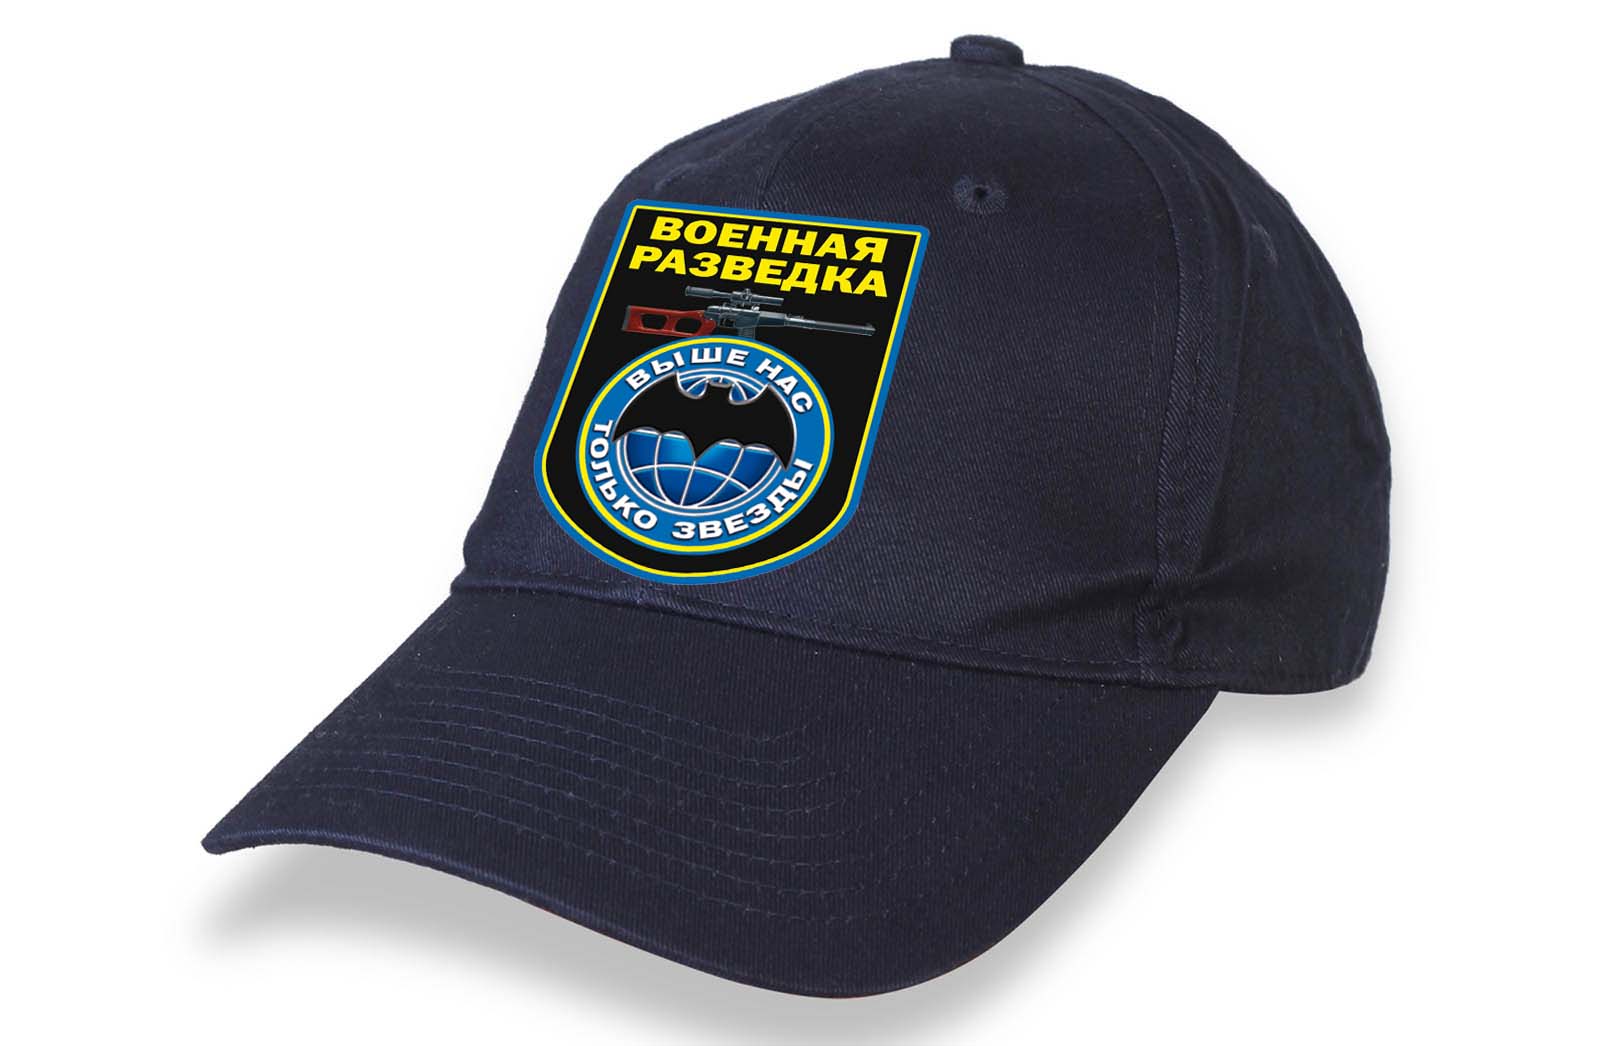 Тёмно-синяя кепка военной разведки – "Выше нас только звёзды!" №тр823